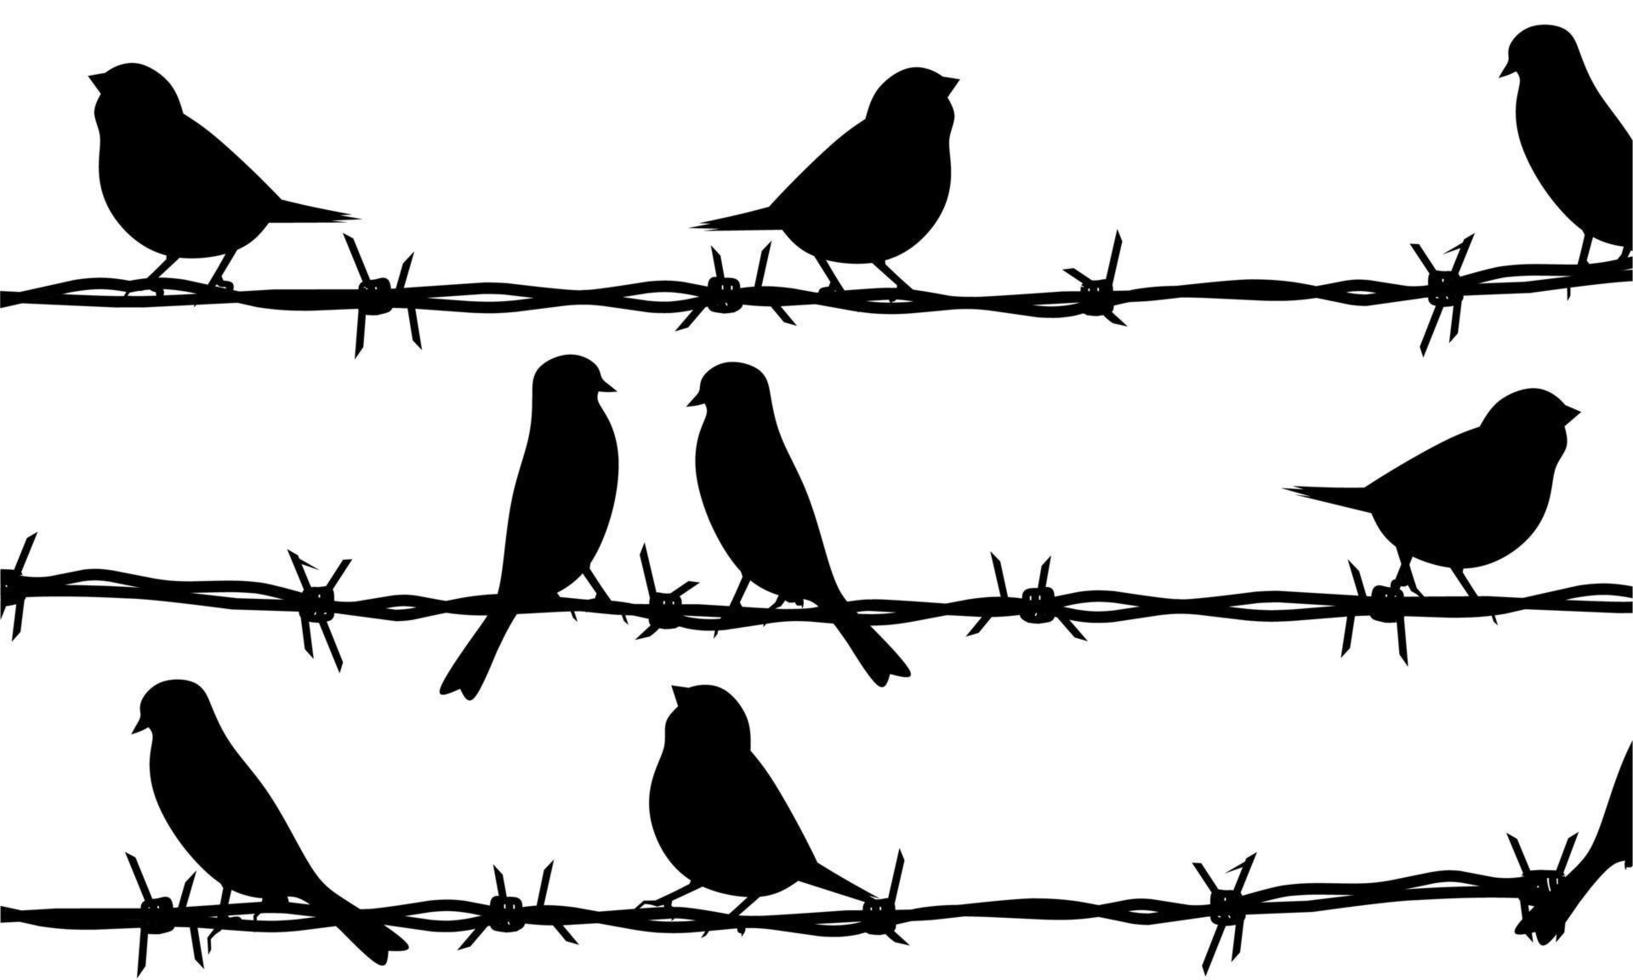 silueta de un pájaro en alambre de púas. concepto de grupo de pájaros sentados en alambre aislado sobre fondo blanco. ideal para carteles sobre pájaros vector